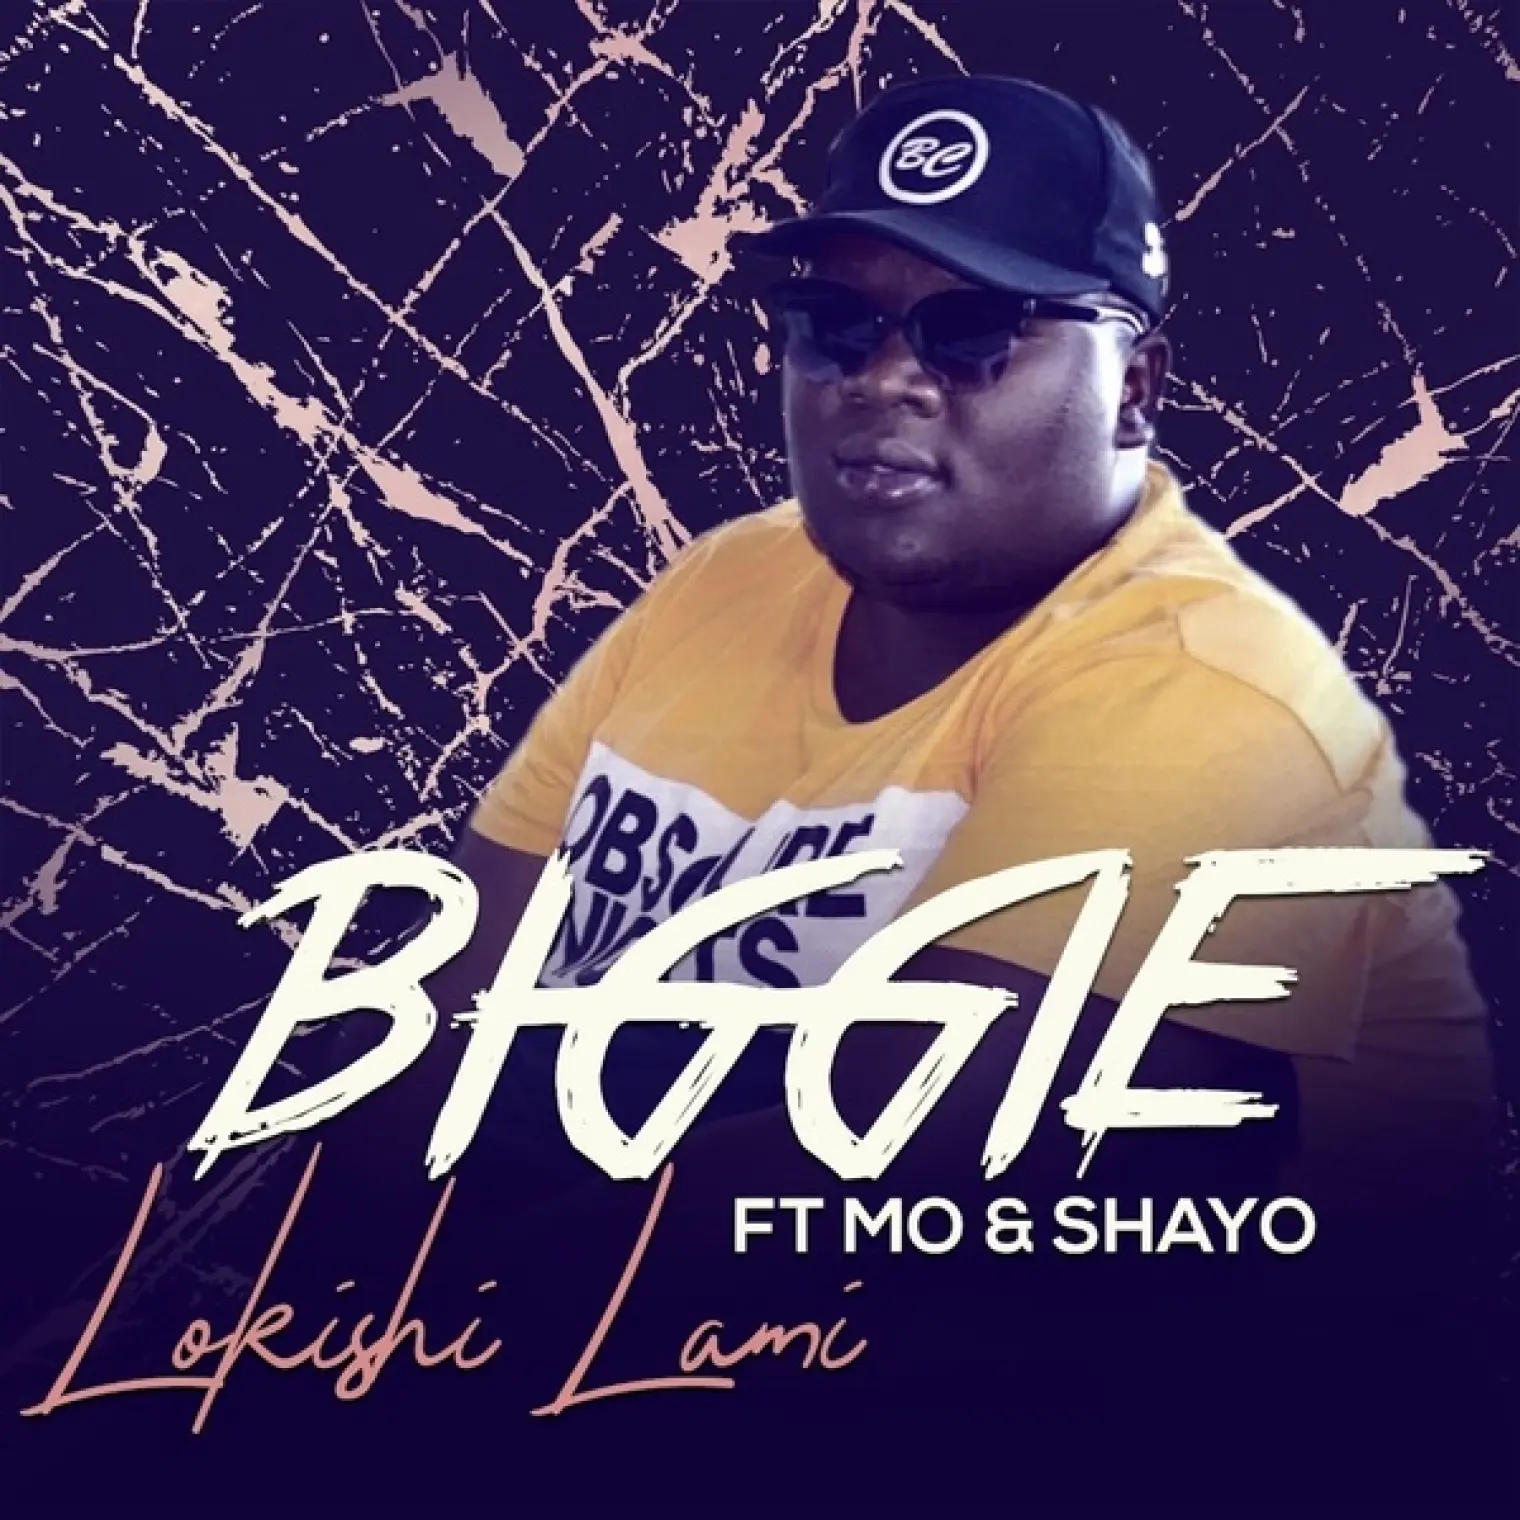 Lokishi Lami -  Biggie 